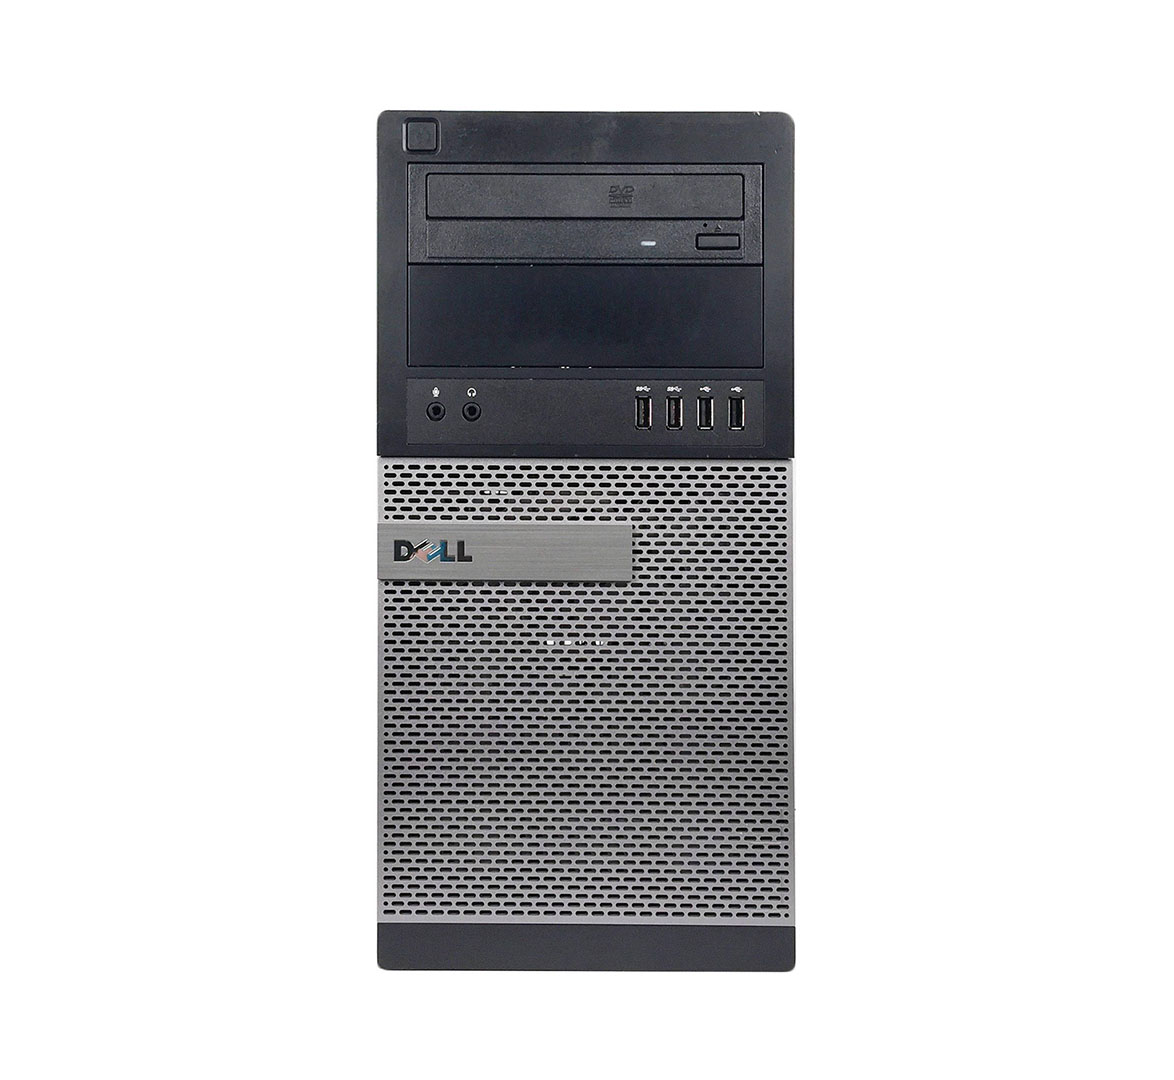 Dell OptiPlex 7010 Tower Business Desktop PC, Intel Core i5-3rd Generation CPU, 4GB RAM, 1TB HDD, wifi, Windows 10 Pro